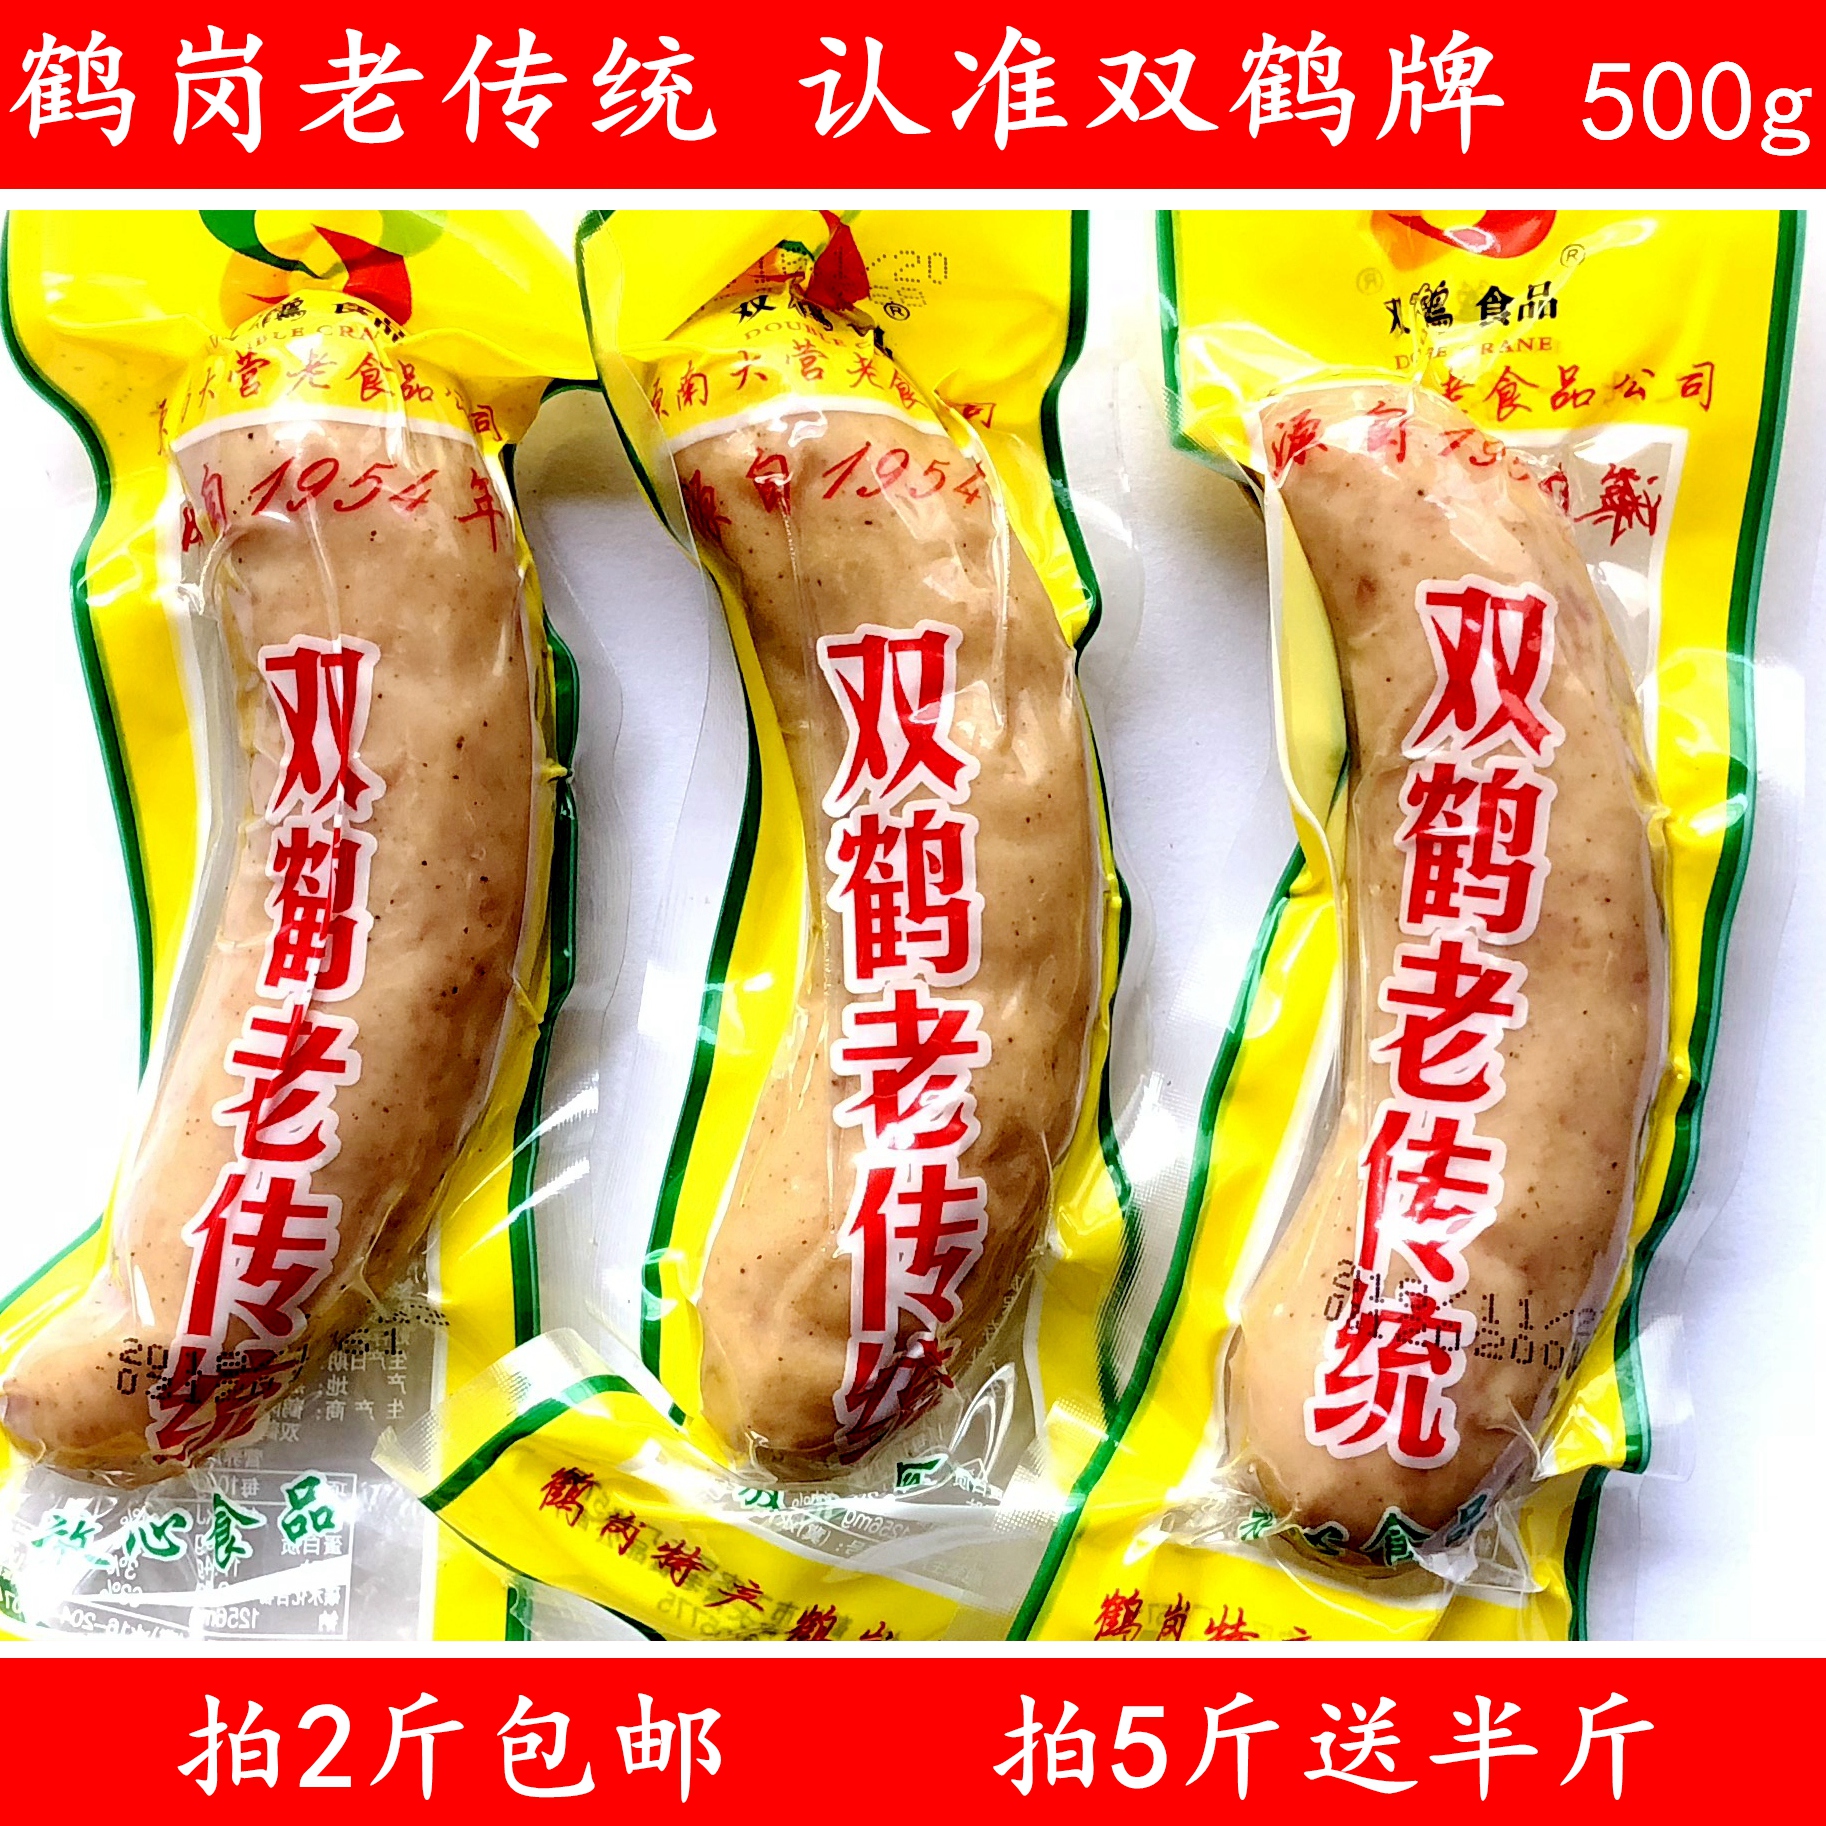 鹤岗双鹤老传统香肠500g  5斤送半斤 东北蒜味香肠拍2斤包邮 特产